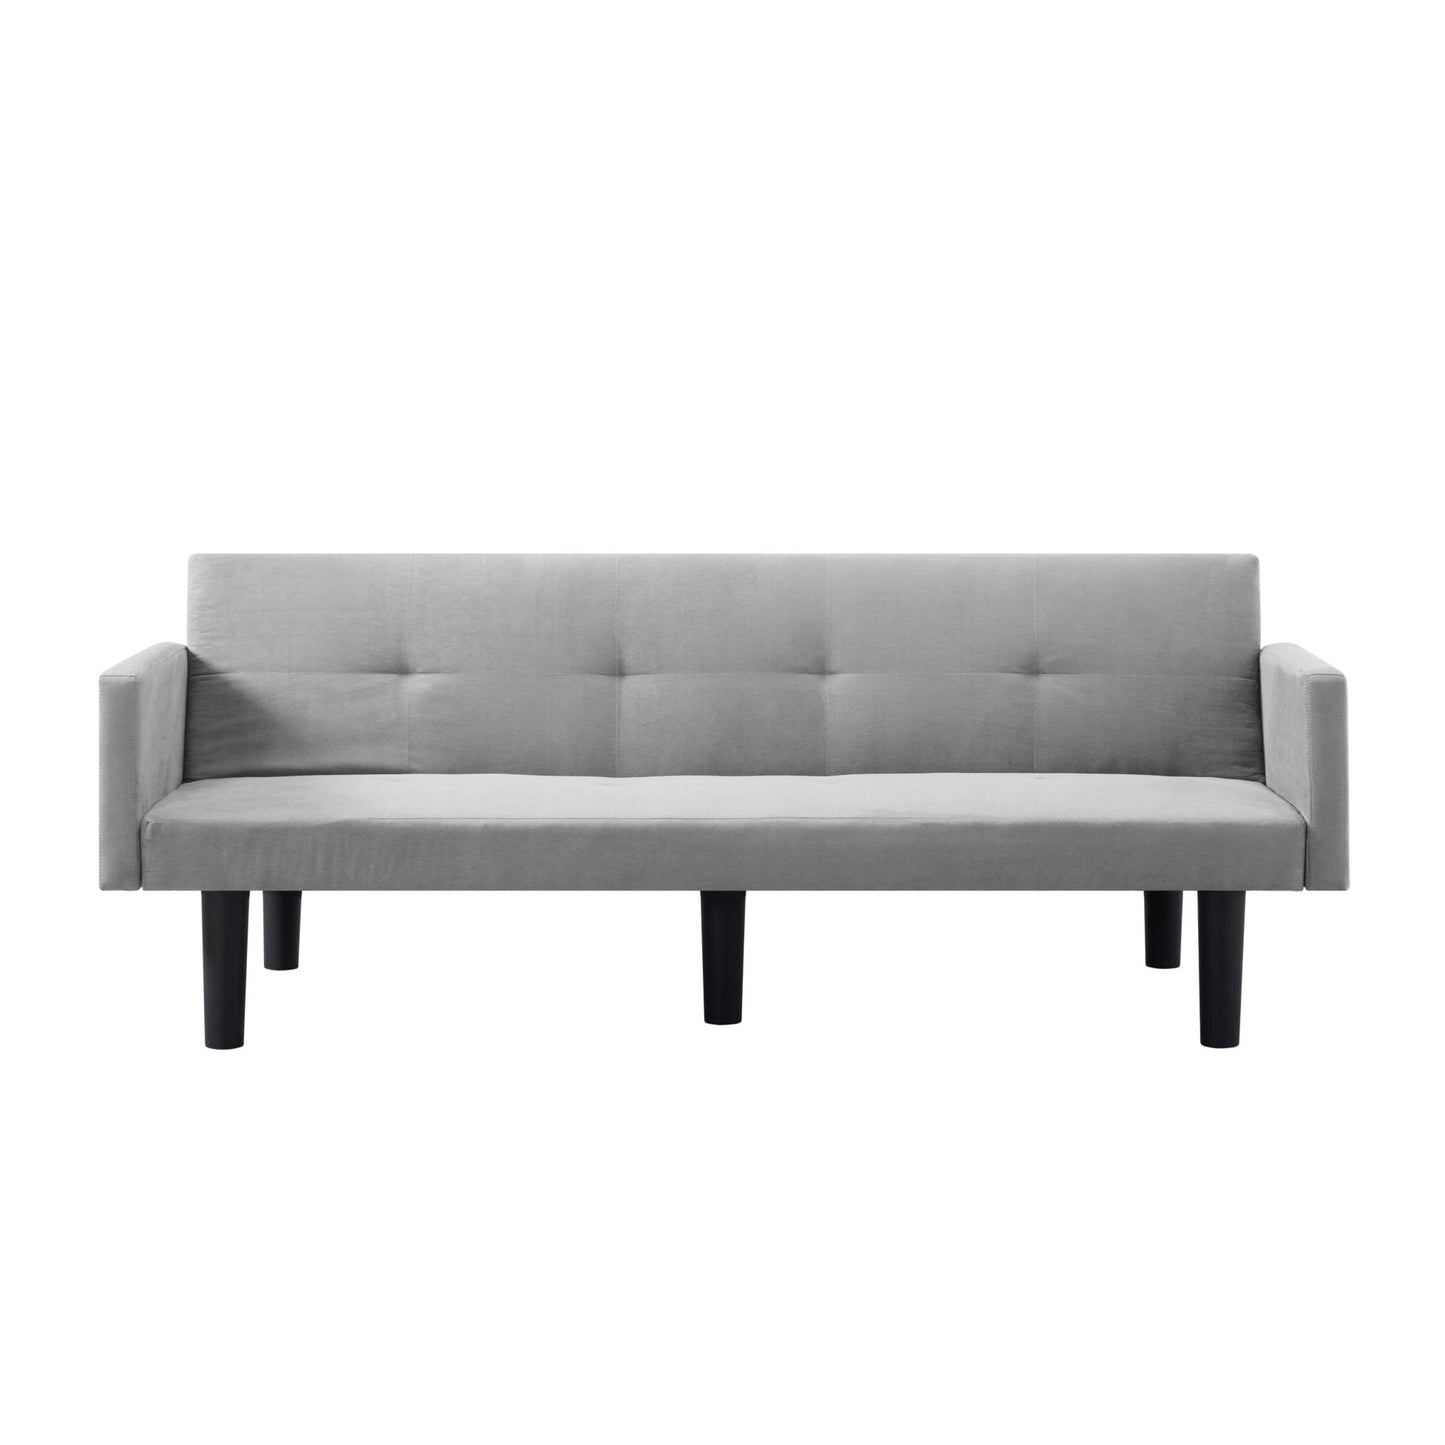 74.8” Futon Sofa bed